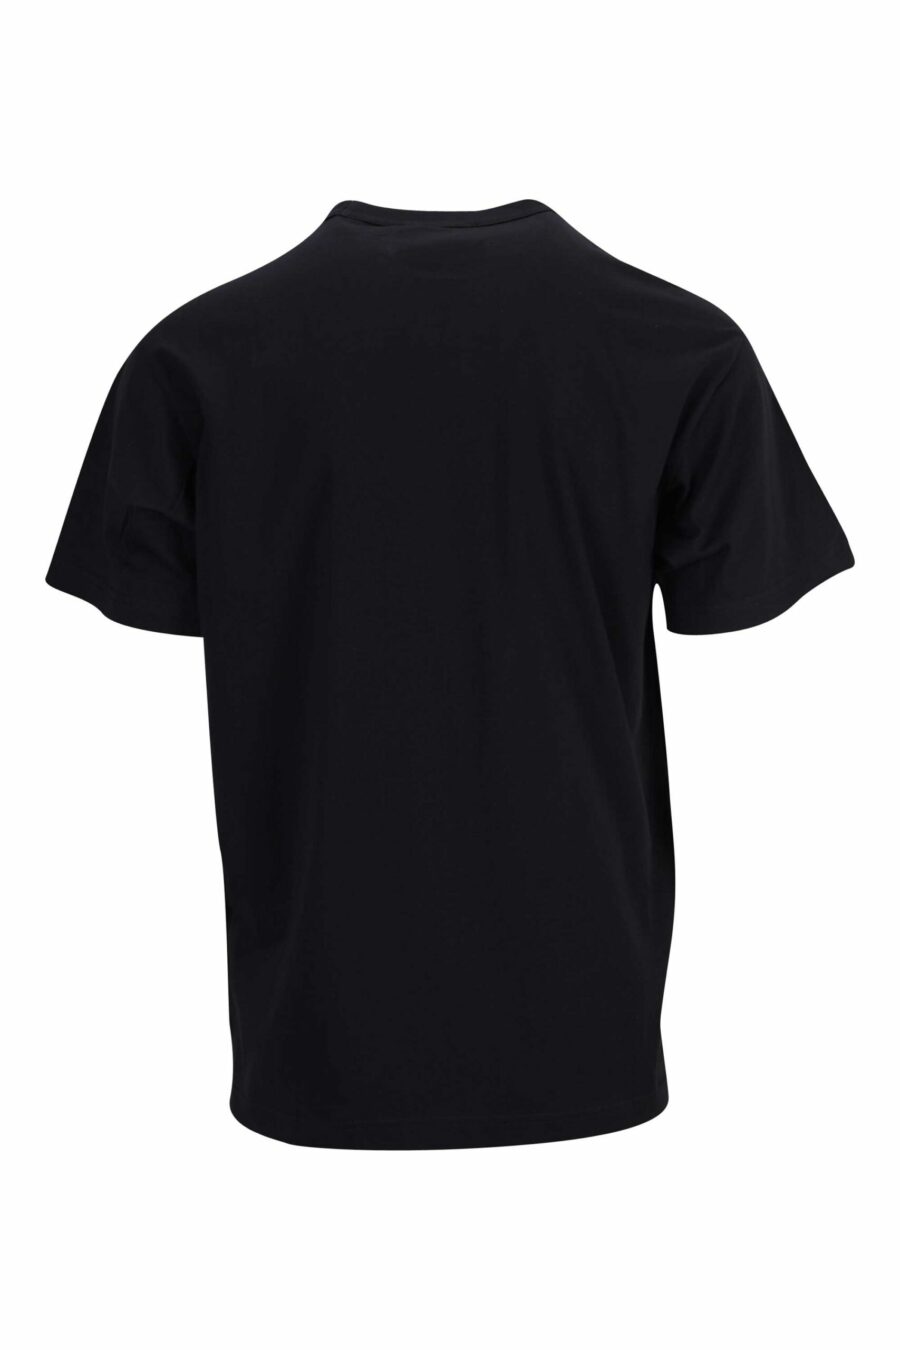 T-shirt noir avec mini-logo circulaire contrasté - 8052019471700 1 scaled